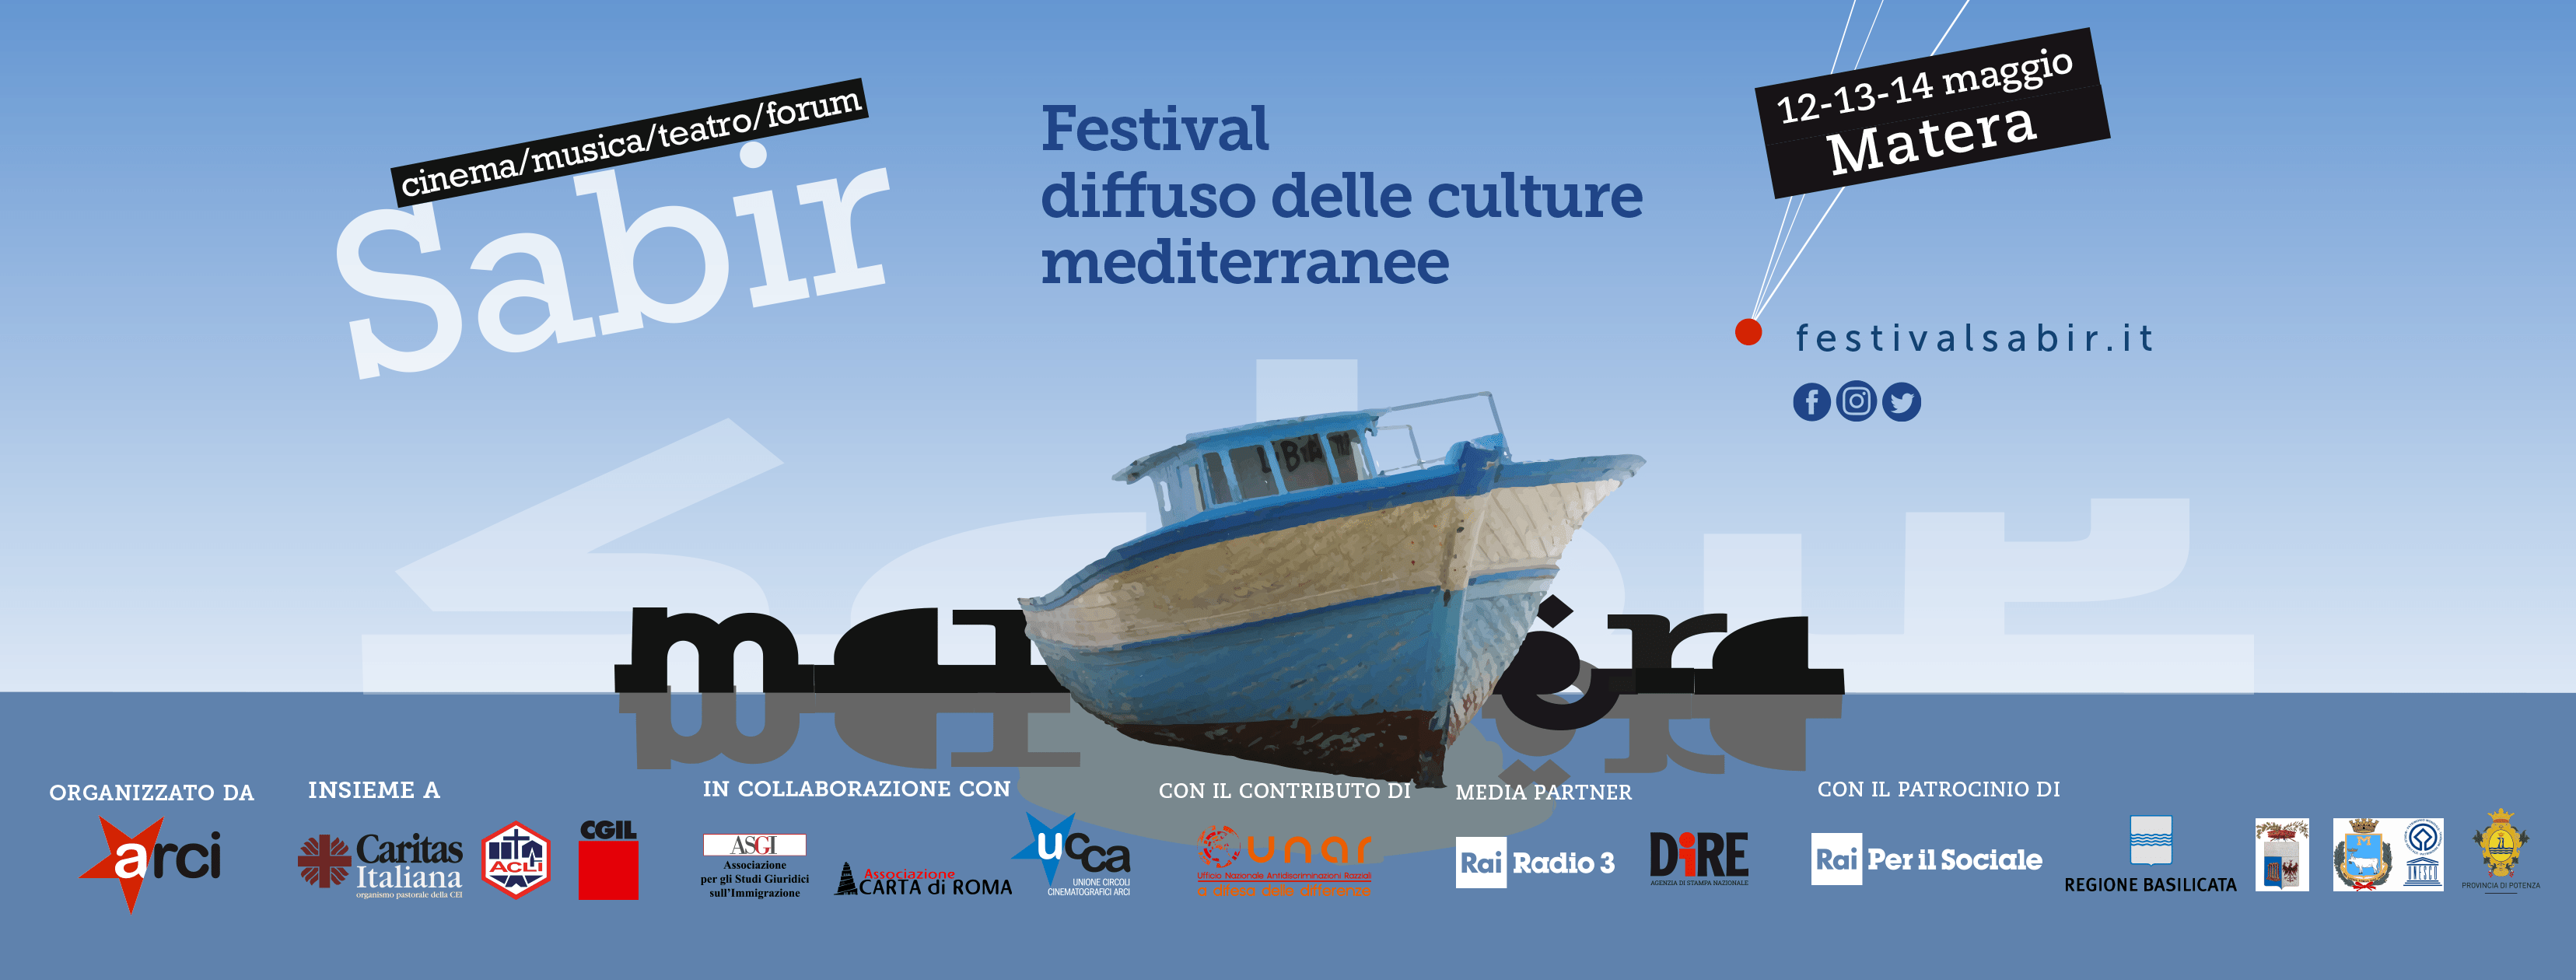 Matera ospita il Festival Sabir: musei e spazi espositivi coinvolti